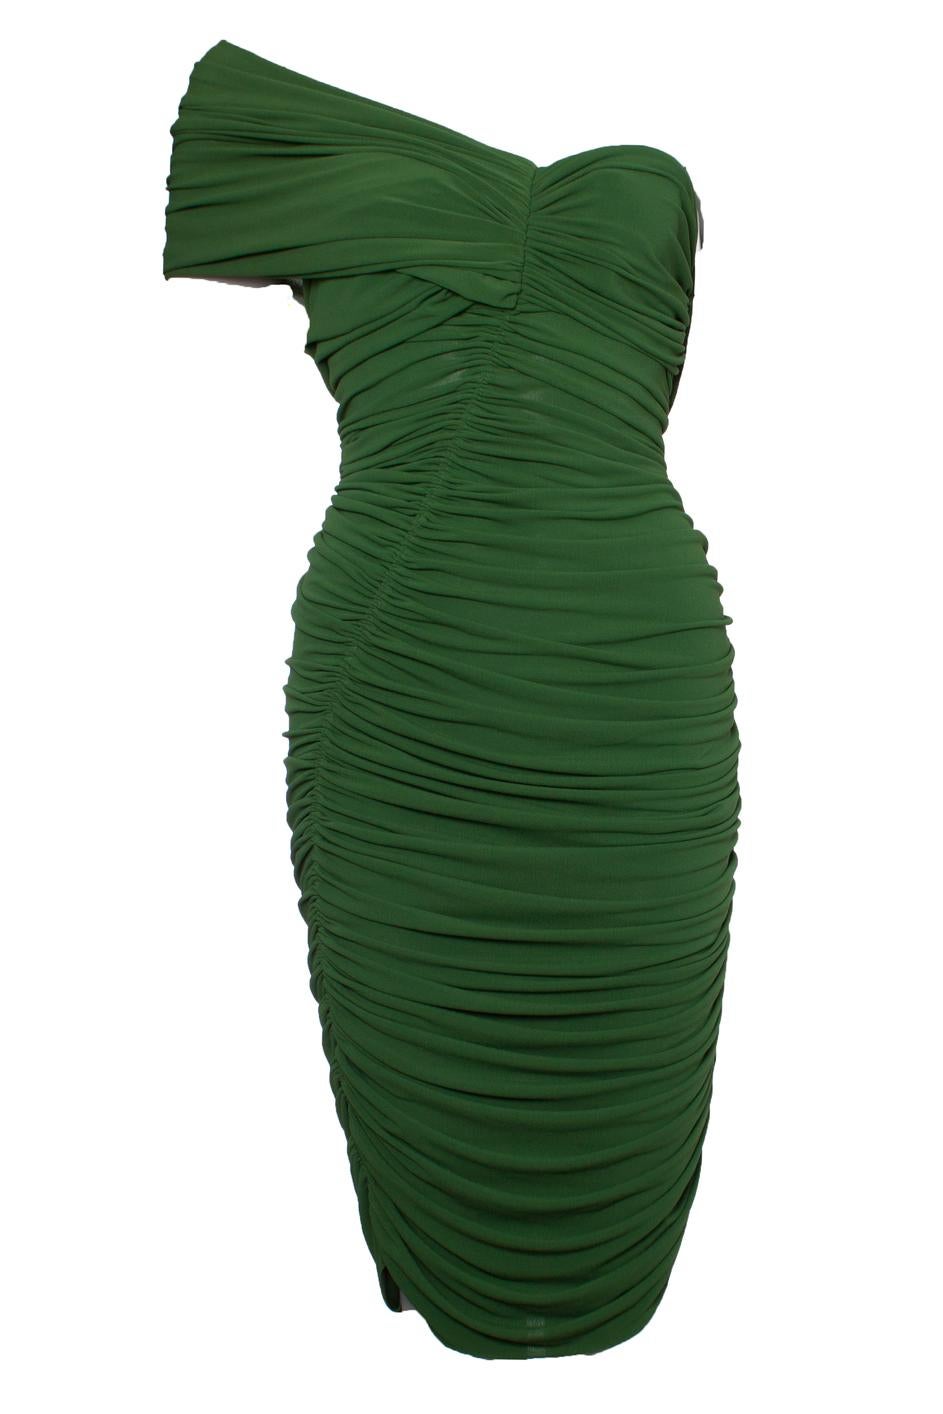 Lanvin, robe drapée verte avec une épaule, pouvant être portée de plusieurs façons. L'article est en très bon état. (Comme vu sur le podium en 2012).

• CONDITION : très bon état. 

• TAILLE : IT40 - XS 

• MESURES : longueur 95 cm, largeur 39 cm,